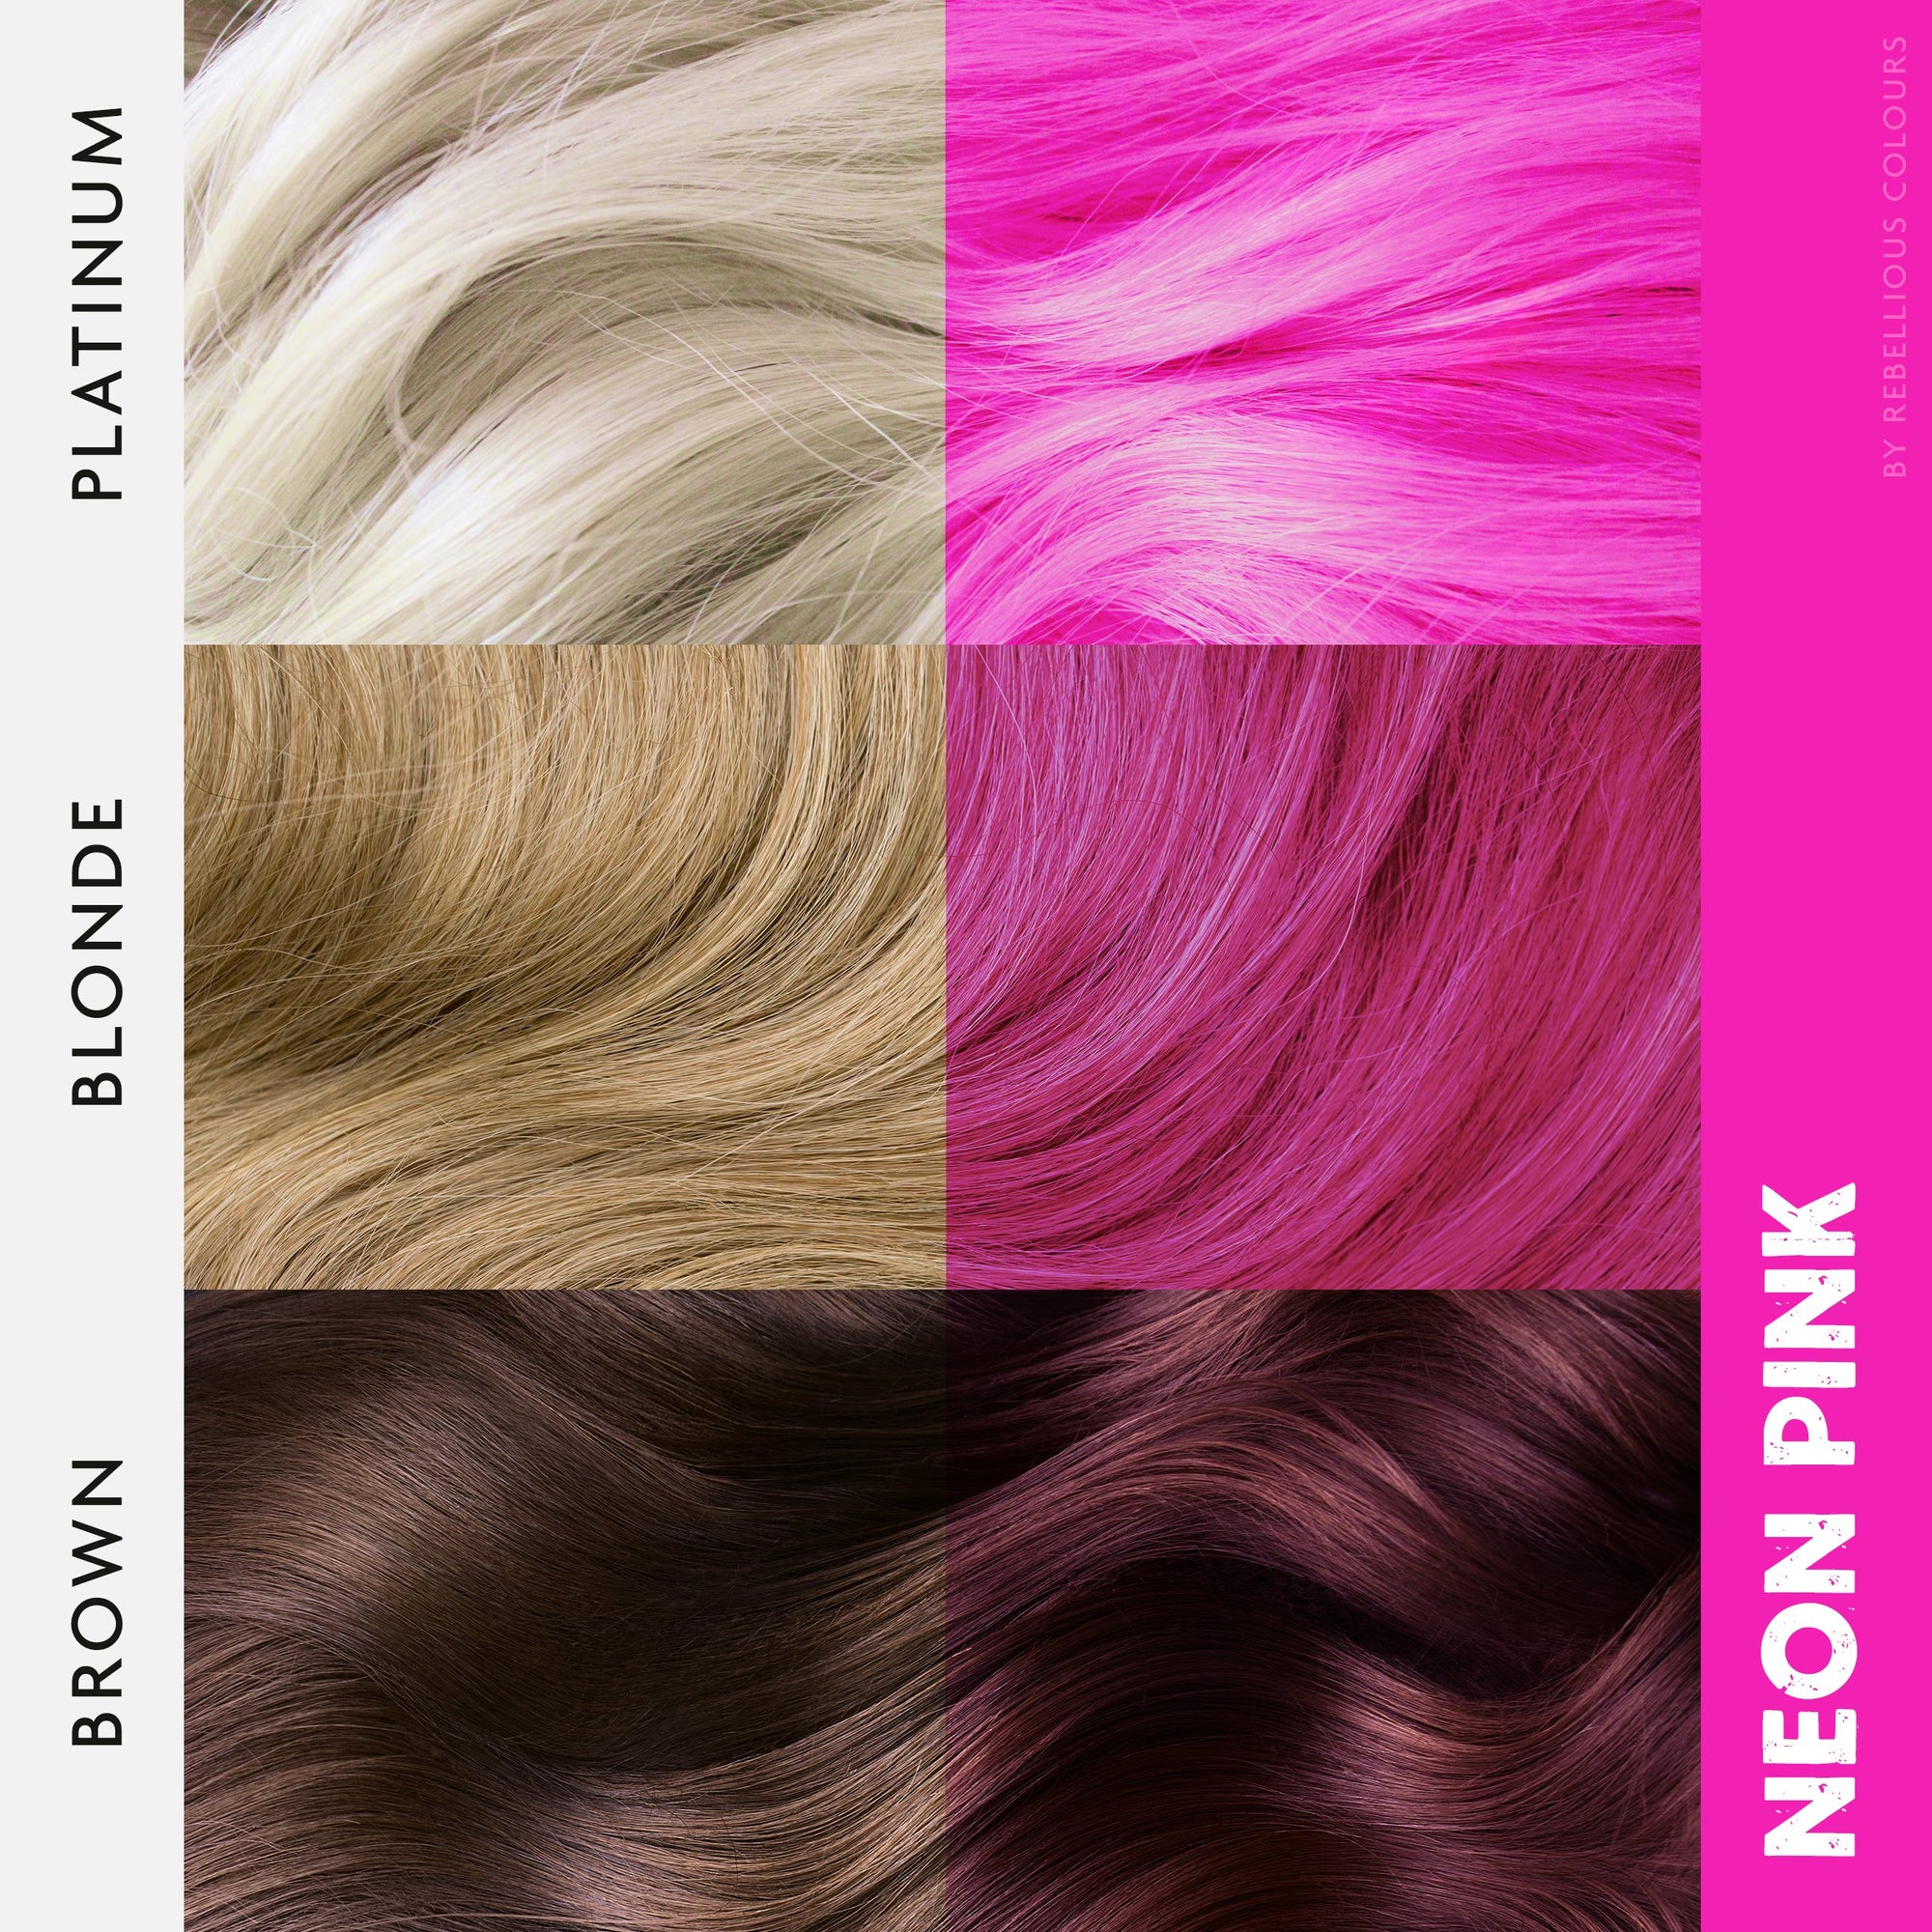 Rebellious Semi-Permanent Hair Dye, Glowsticks Ltd